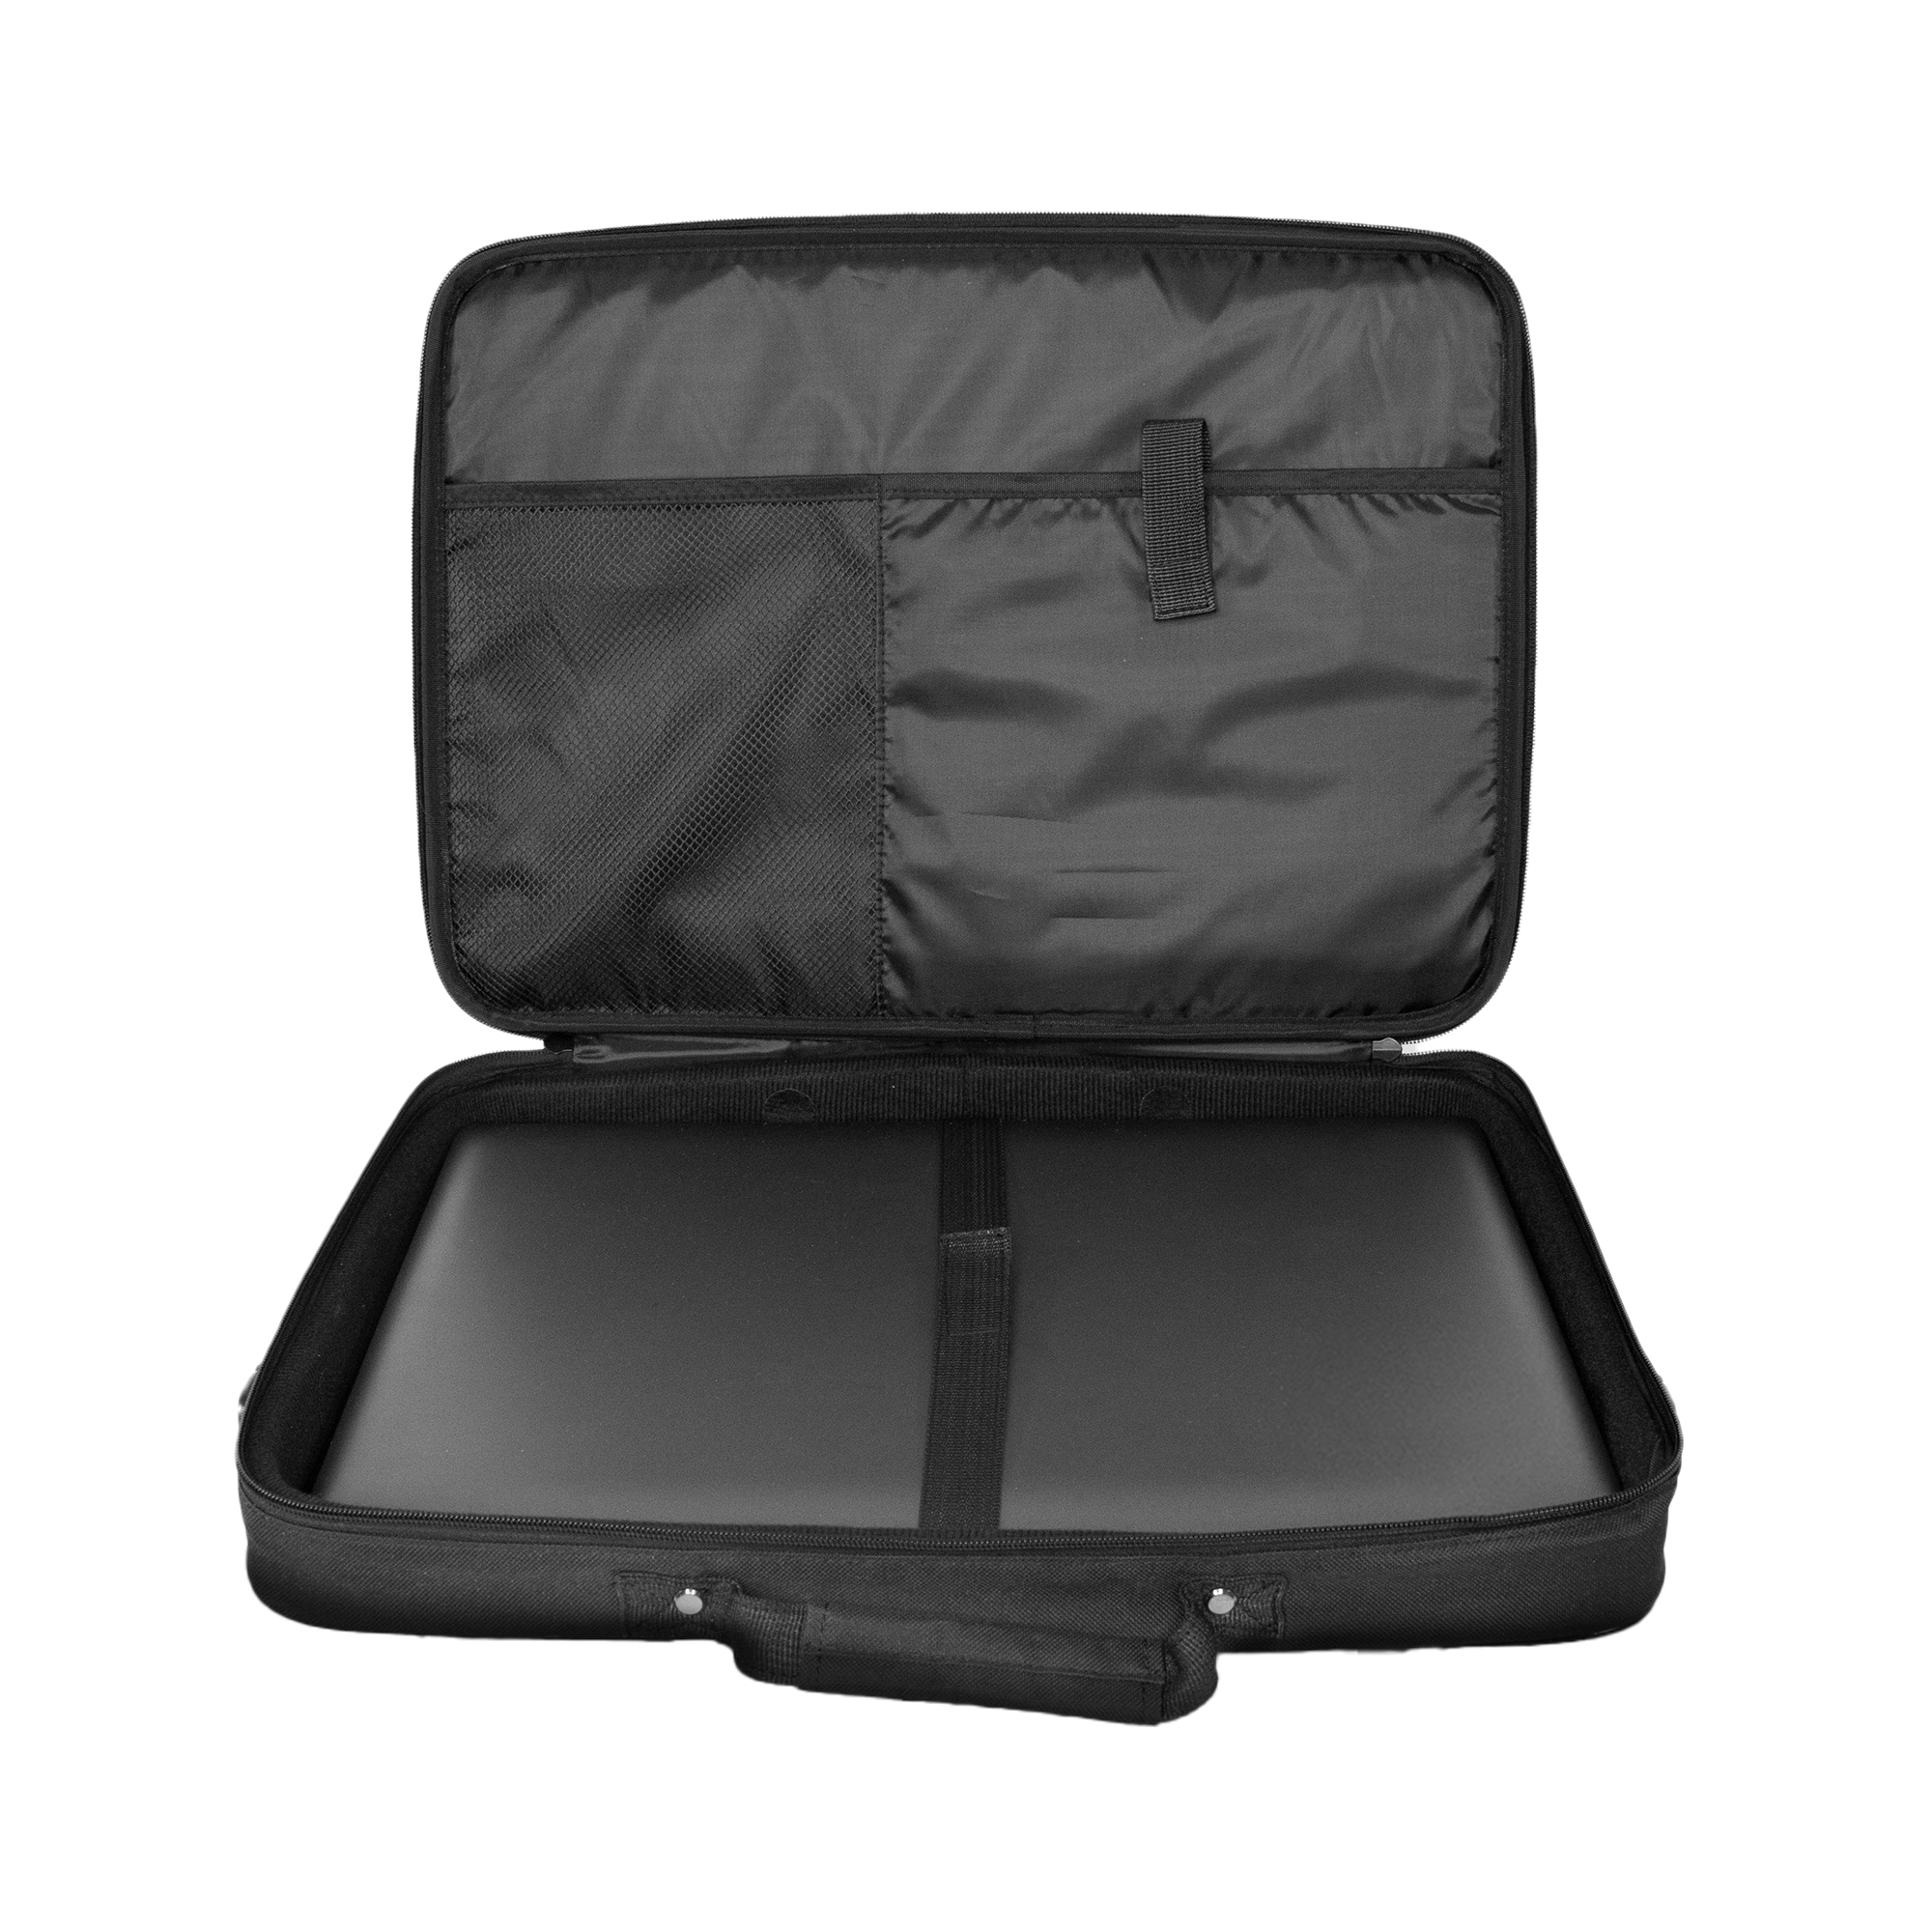 Ultron NB Tasche Case Plus 17" 42cm Aktenkoffer Design - Tasche